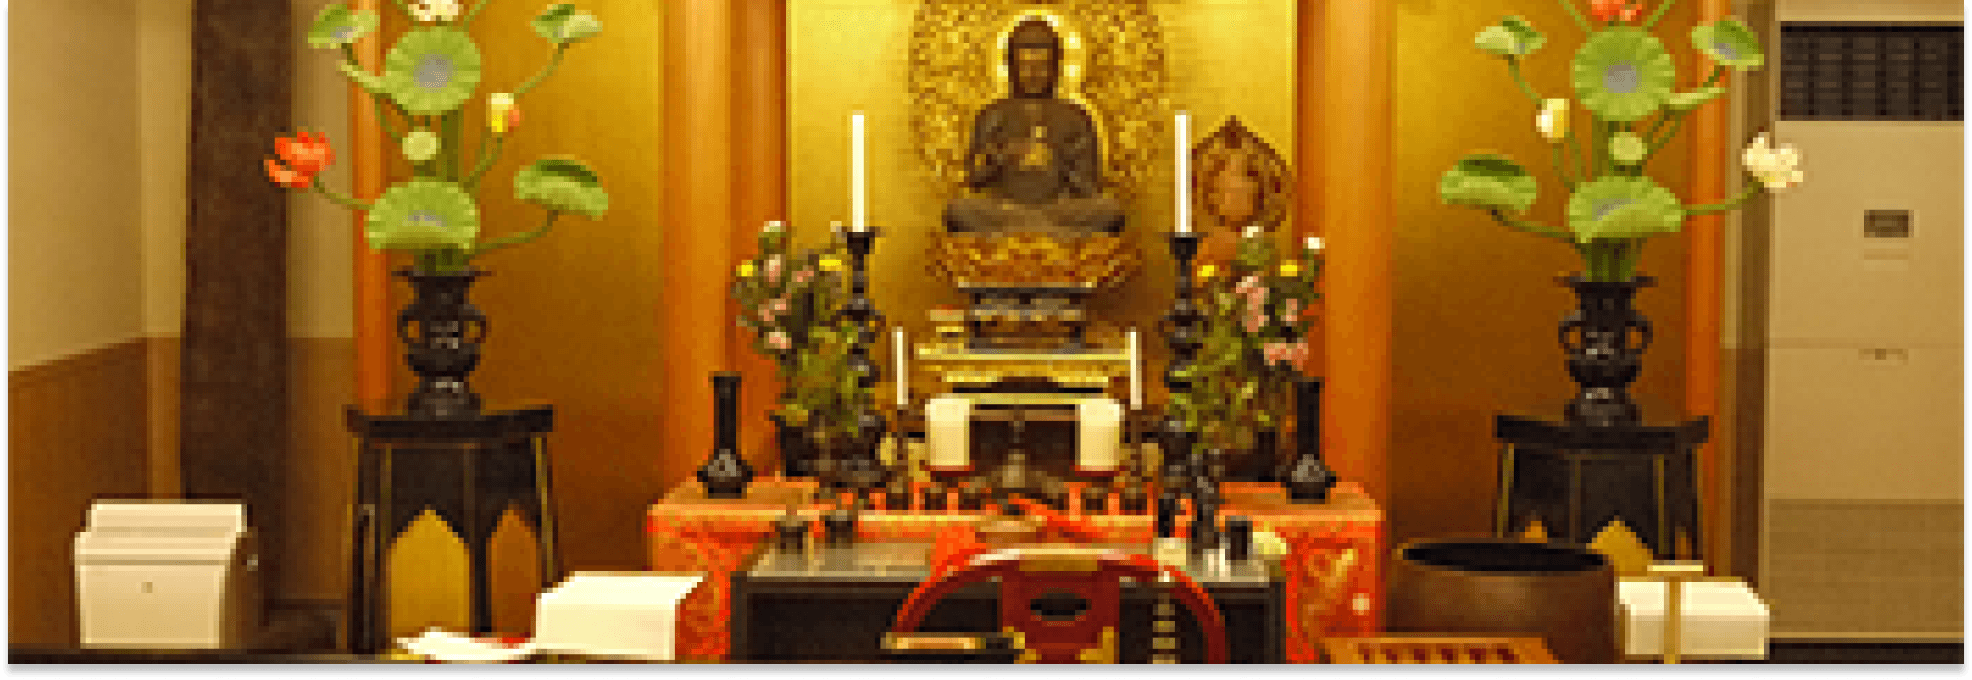 真福寺の納骨堂のメイン画像